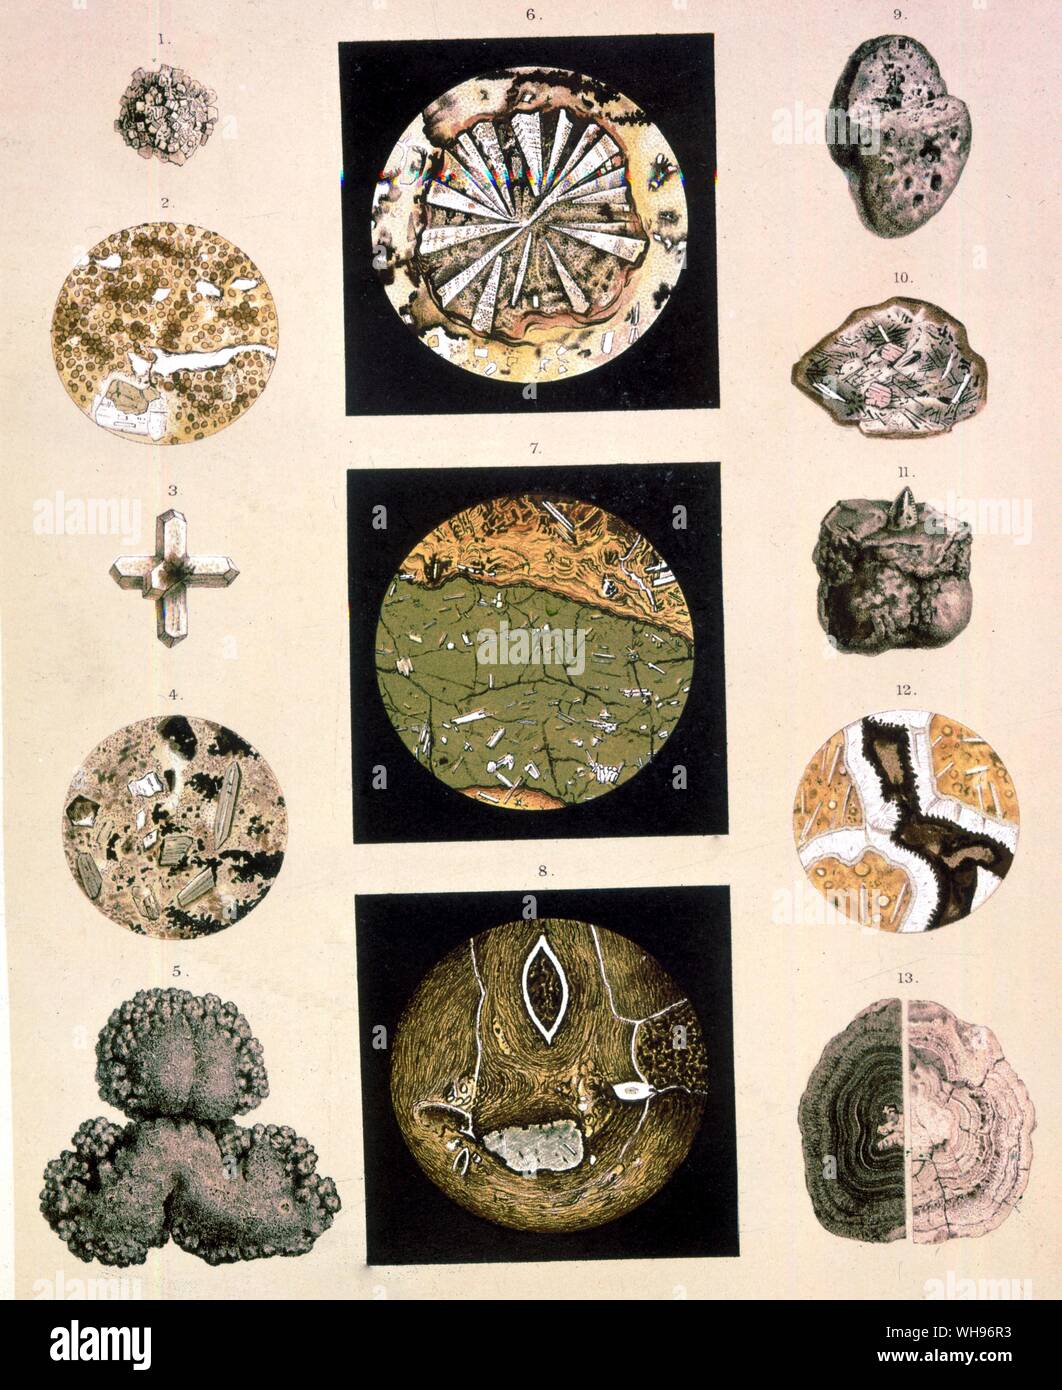 Mineralien aus dem Südpazifik. #S 5,9,10,11 und 13 Manganknollen, #11 mit einem Hai Zahn und #8 ist eine mikroskopische Detail des Mangans. #S 1,3 adn 12 zeigen philipsite Kristalle und #s 2,4,6 und 7 sind vulkanischen Ursprungs, von unten ist das Meer ausgebaggert. Stockfoto